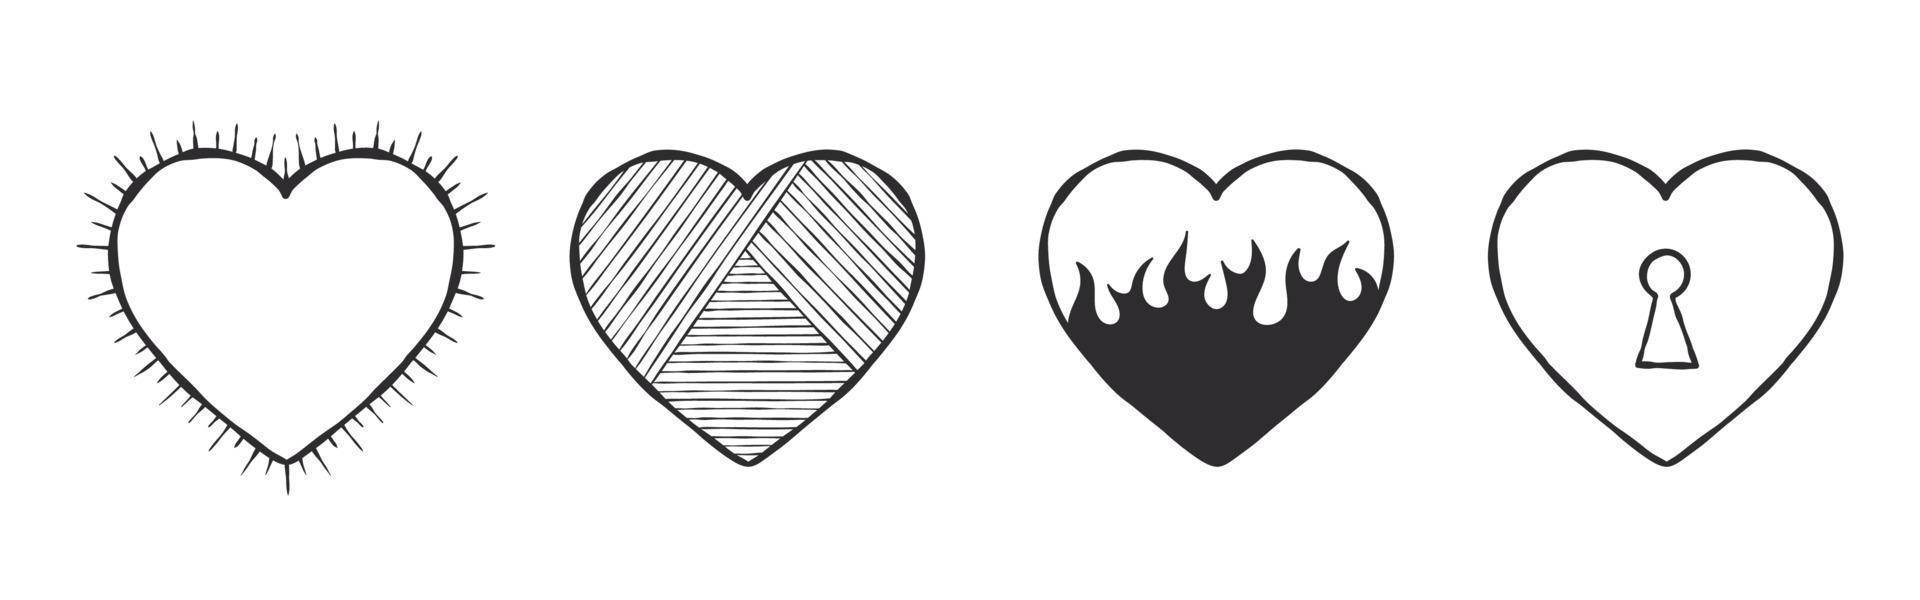 Sammlung von Herzsymbolen. handgezeichnete herzen mit verschiedenen inhalten. Vektorbilder vektor